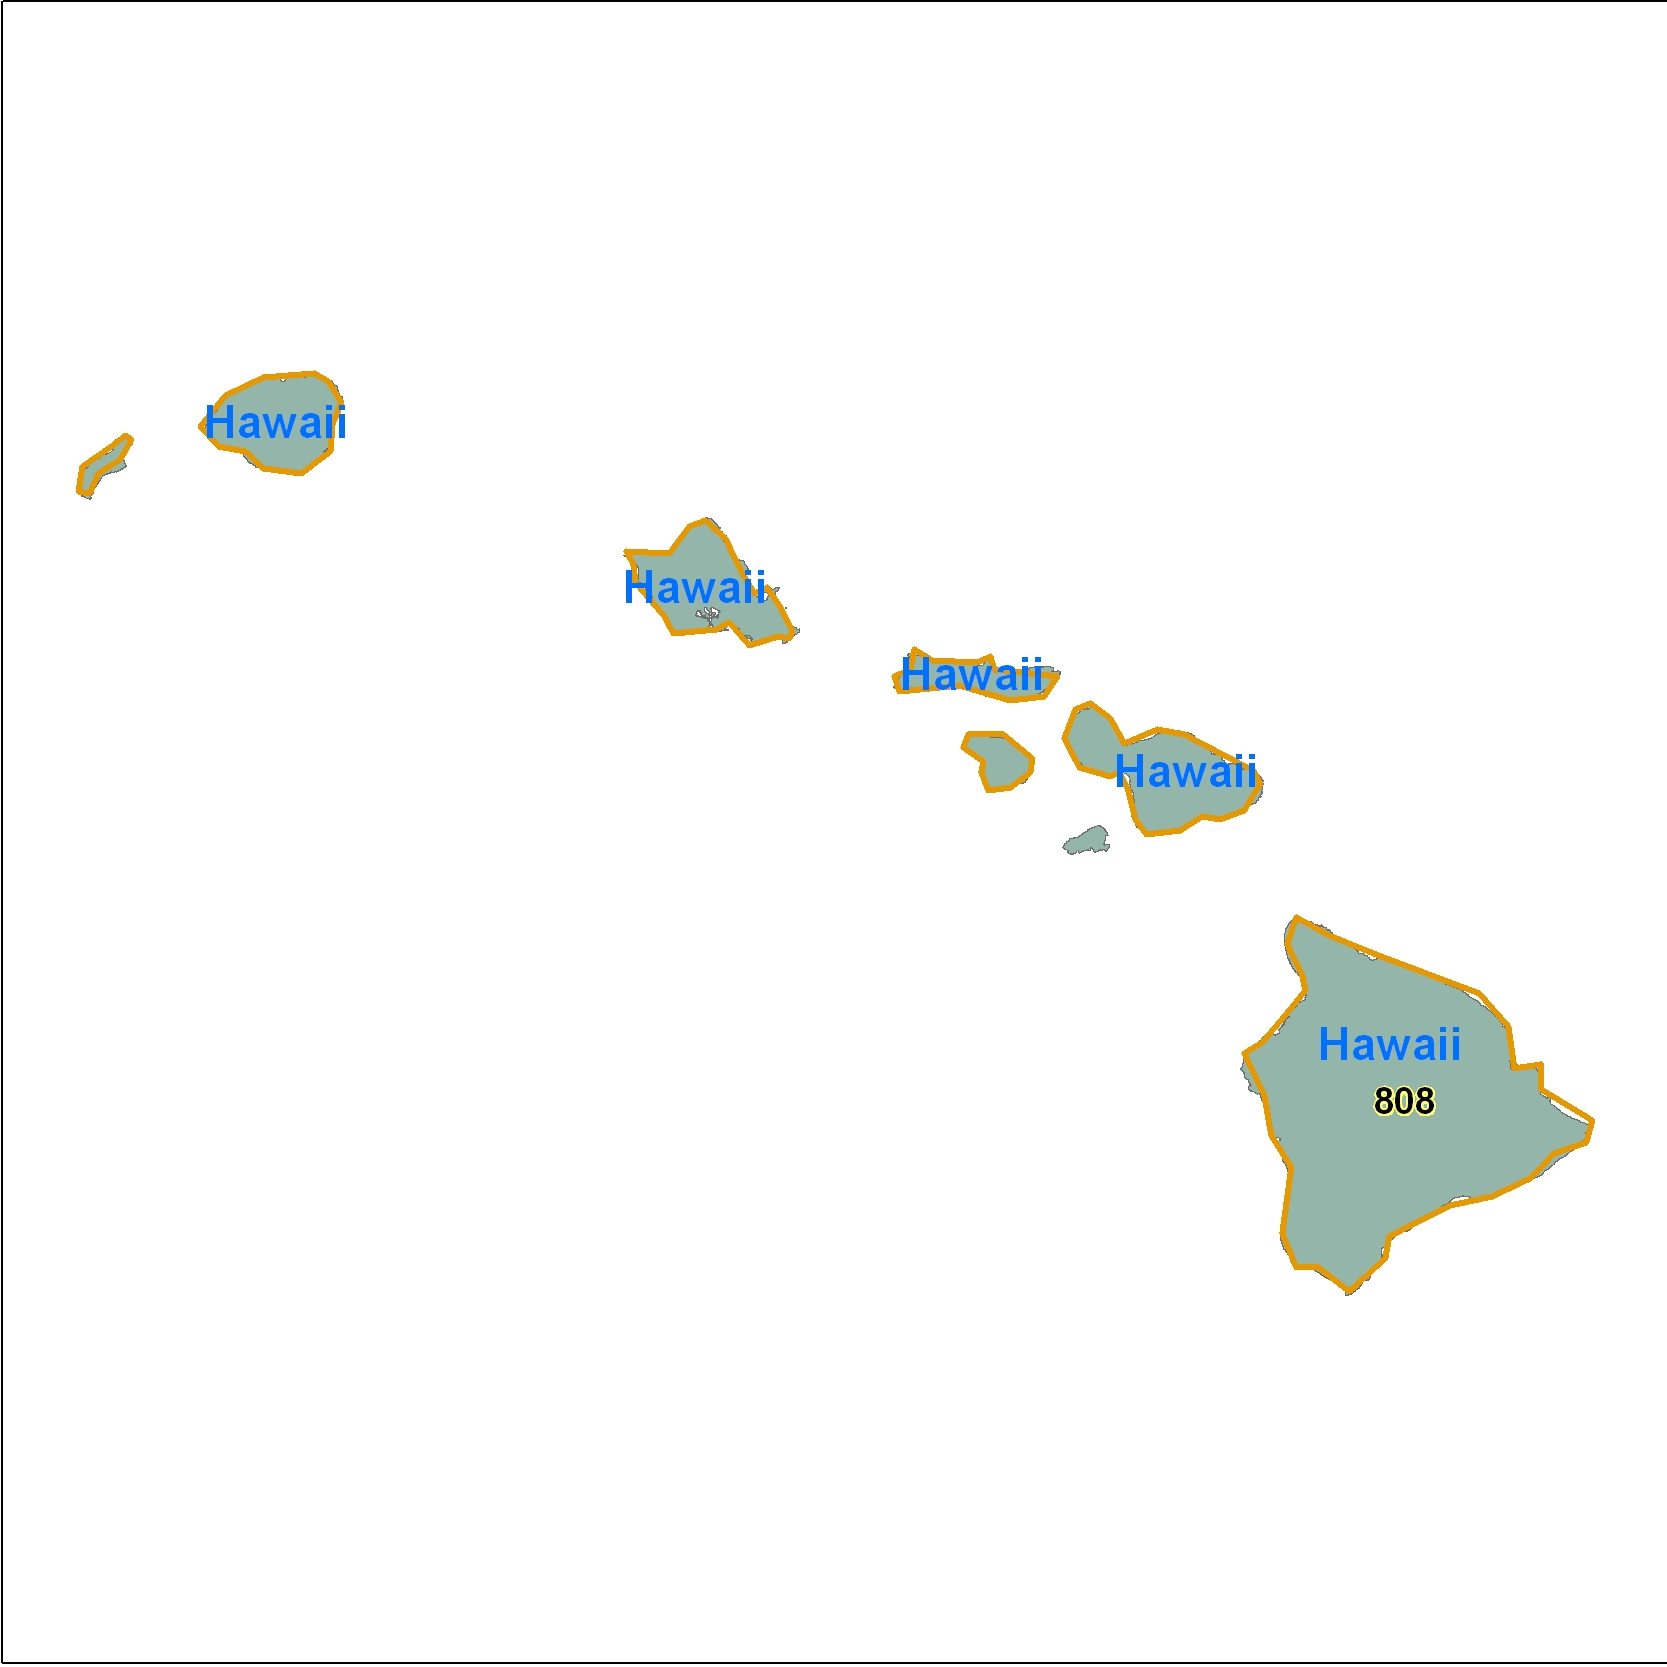 Hawaii (HI) Area Code Map